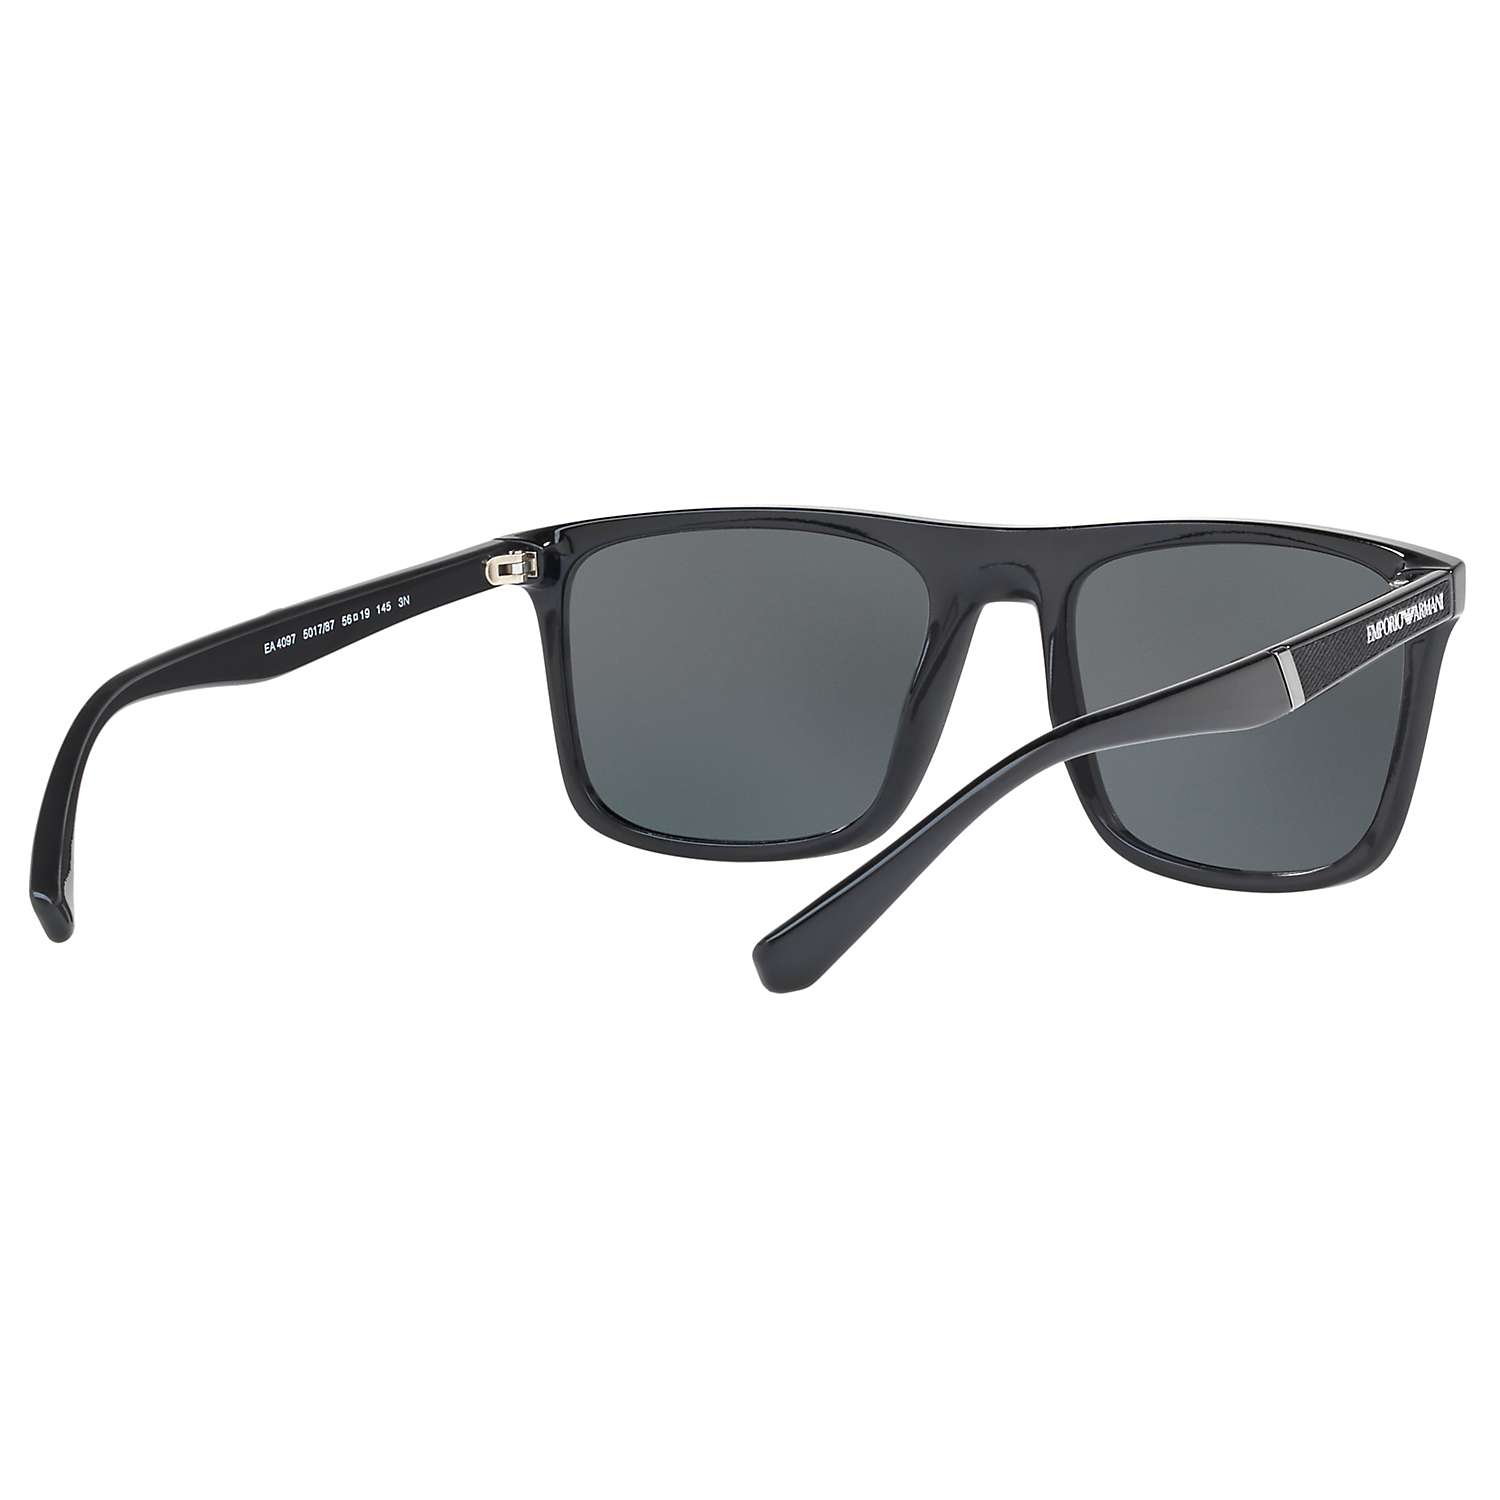 Buy Emporio Armani EA4097 Men's Square Sunglasses Online at johnlewis.com